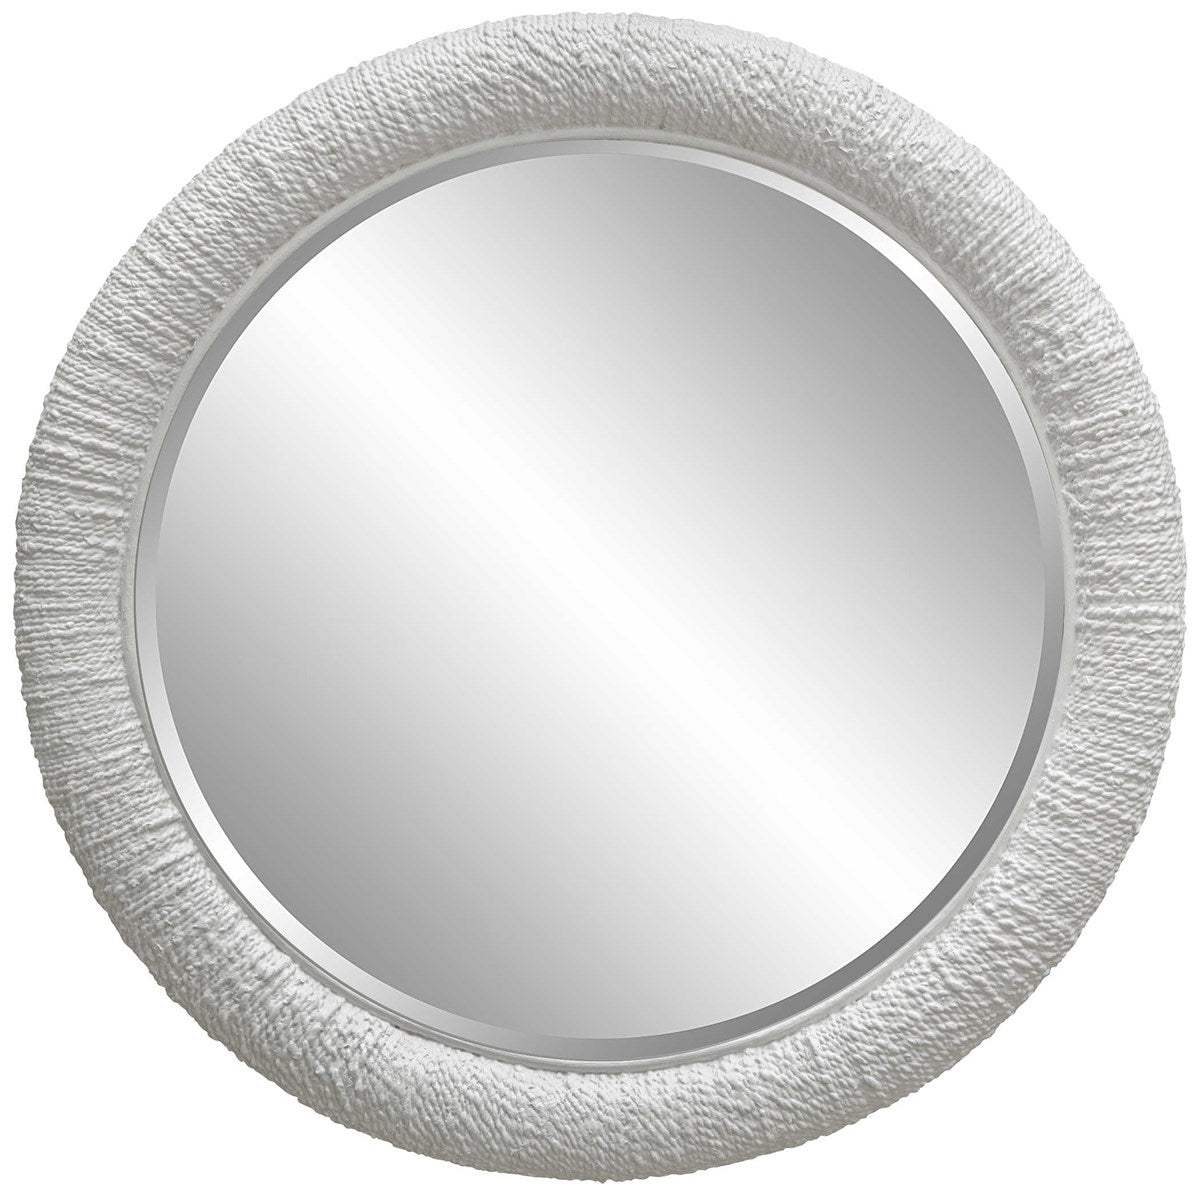 Mariner Round Wall Mirror